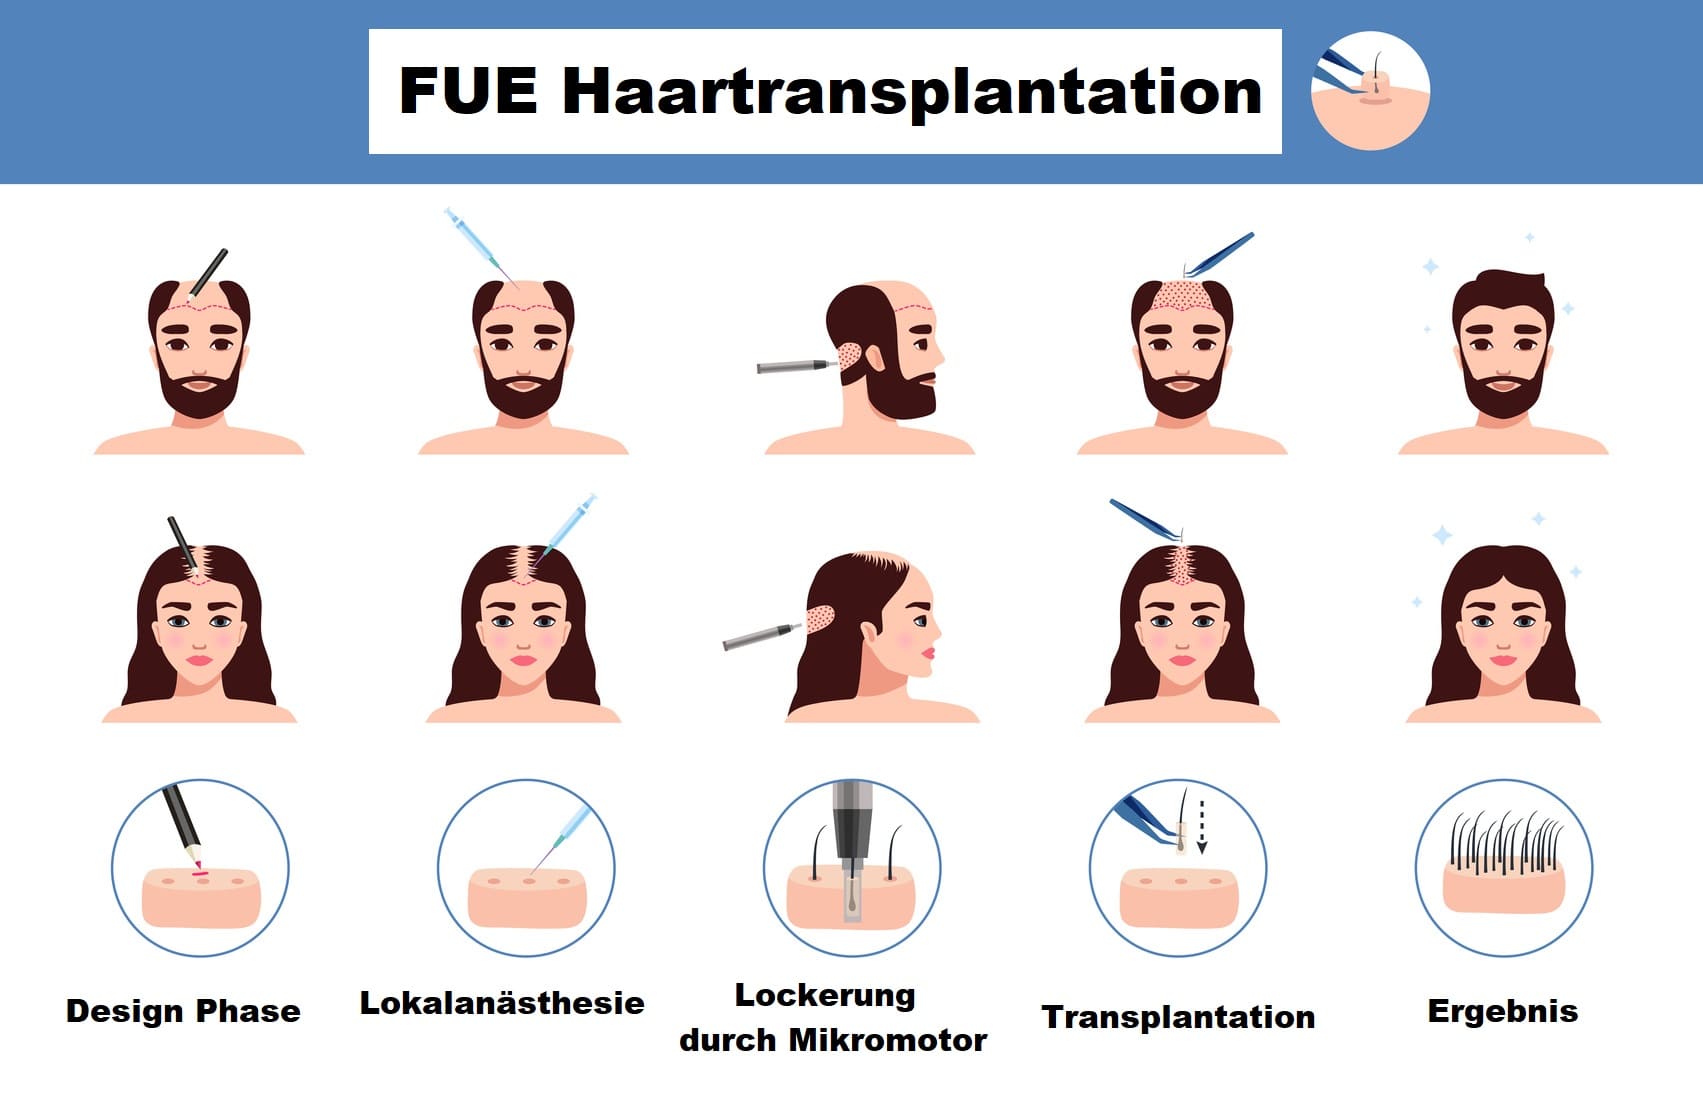 FUE Haartransplantation